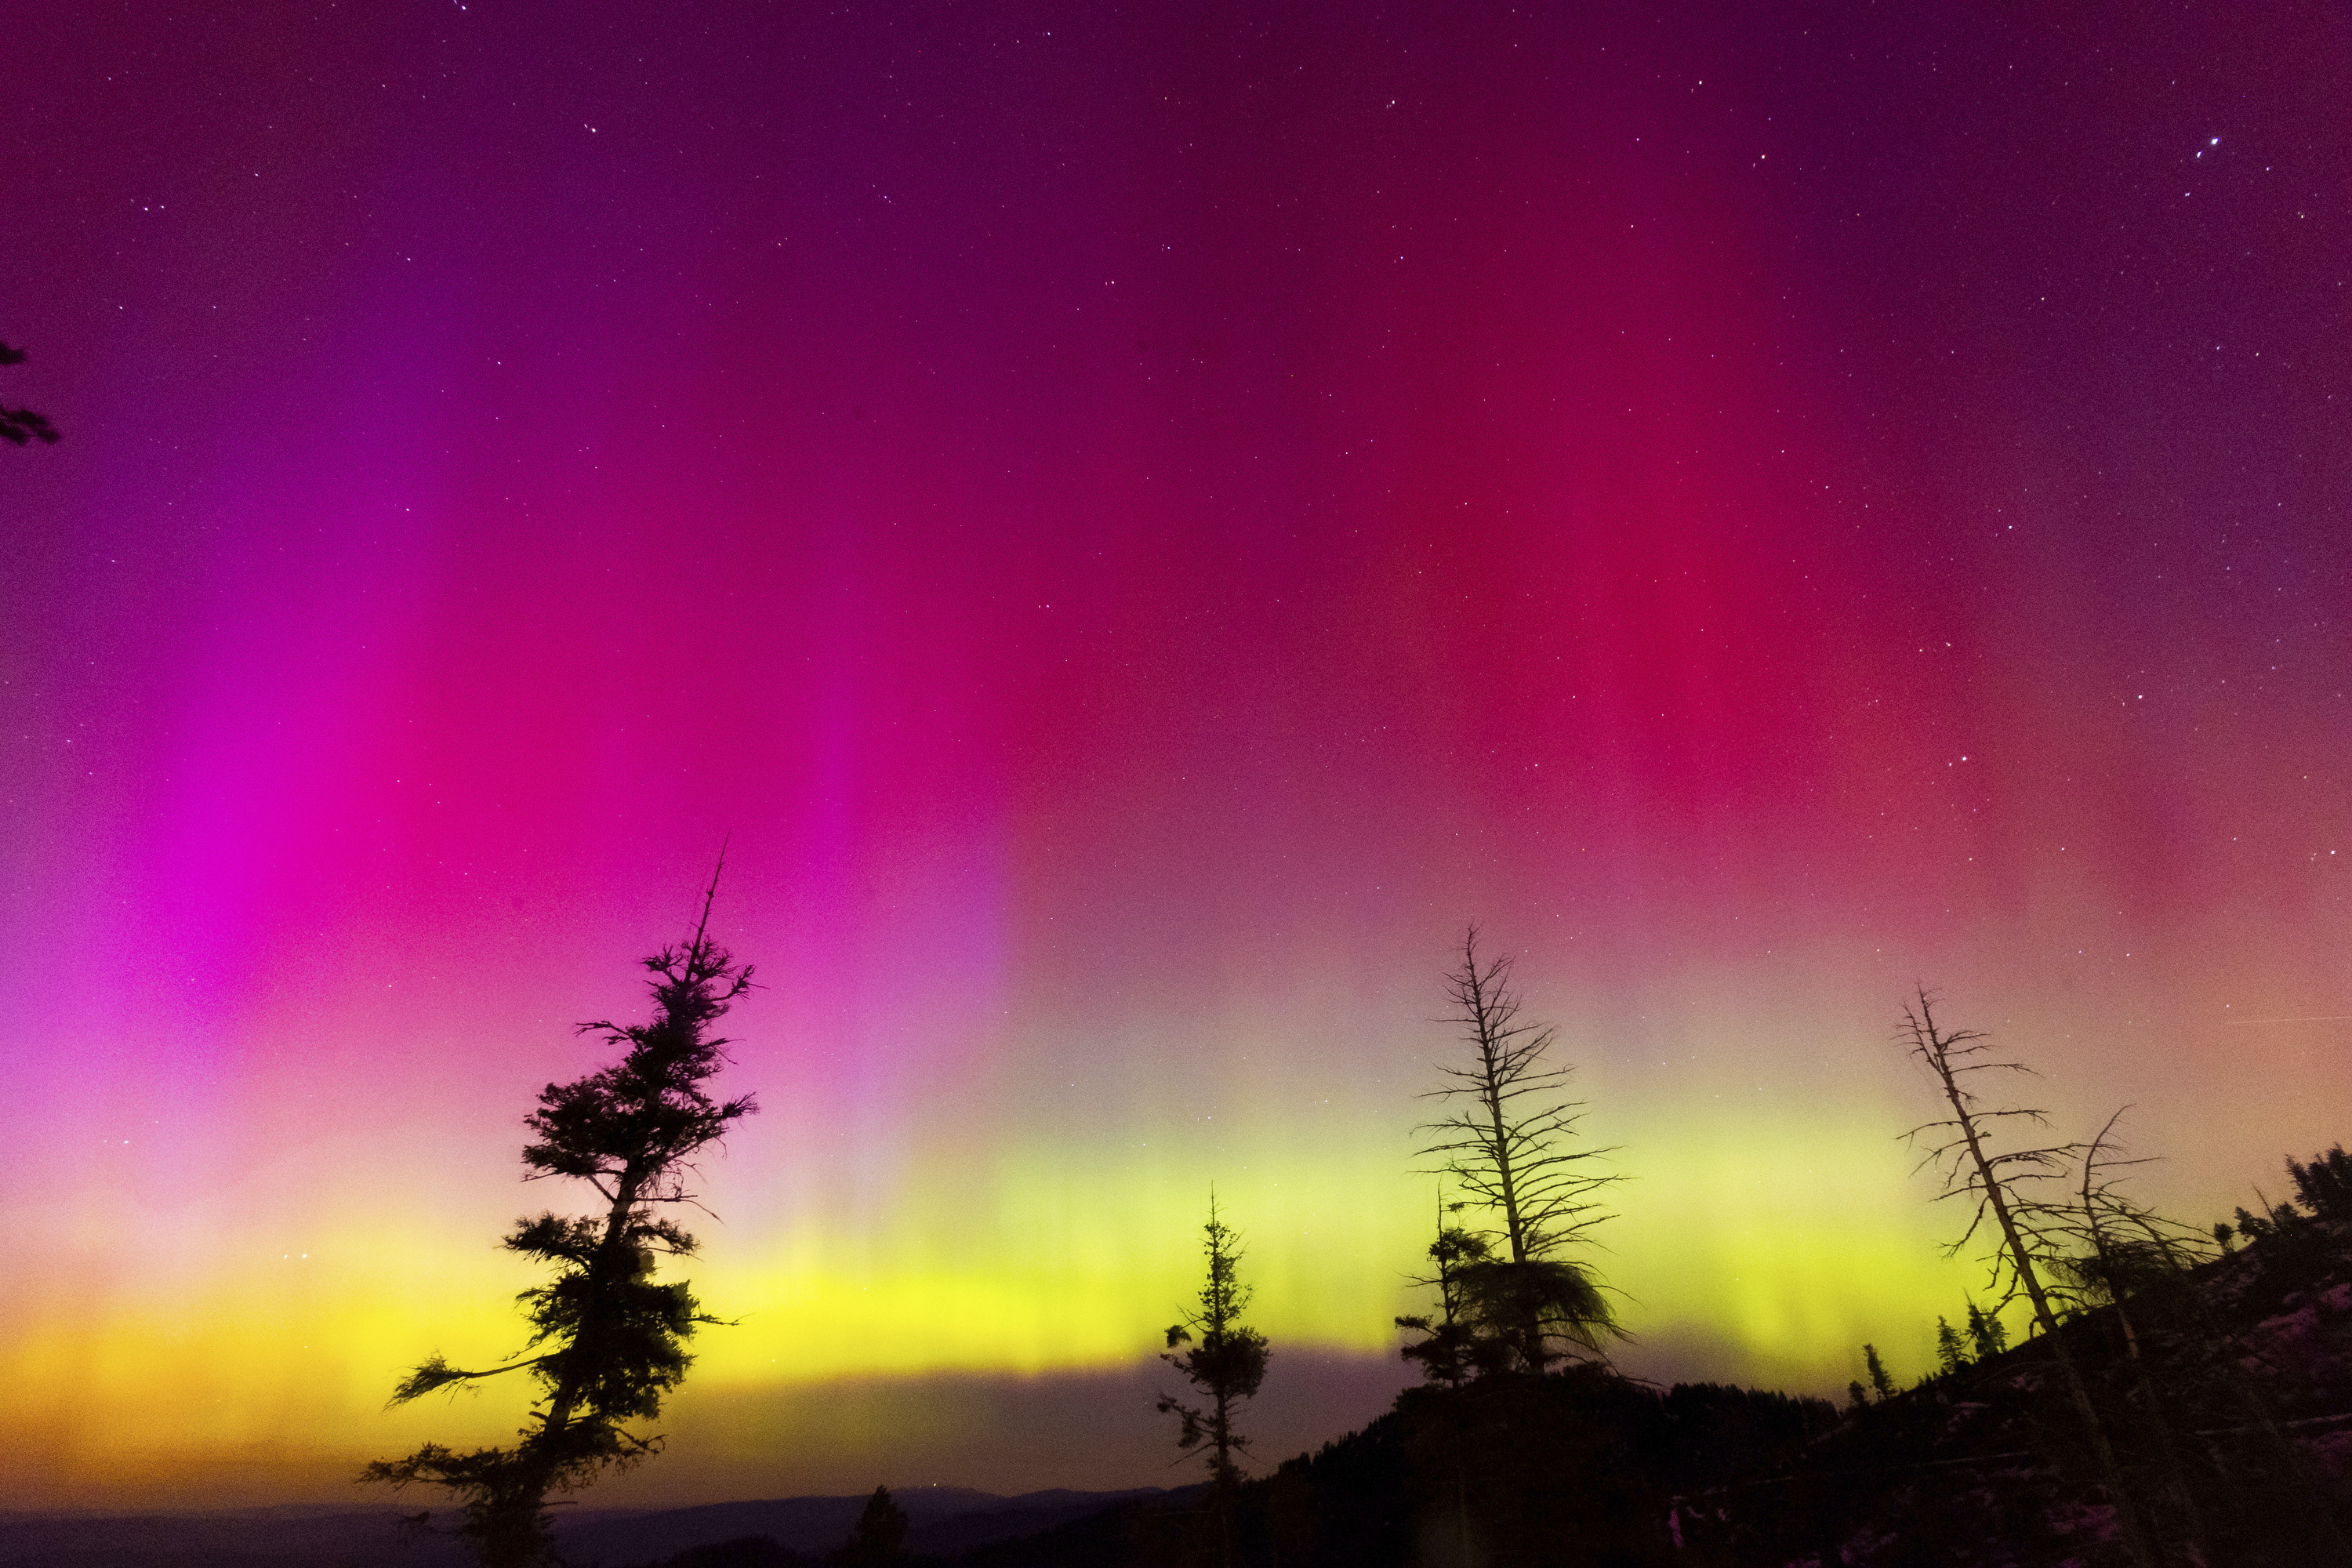 IN PHOTOS: Solar storm creates aurora borealis across Canada, world